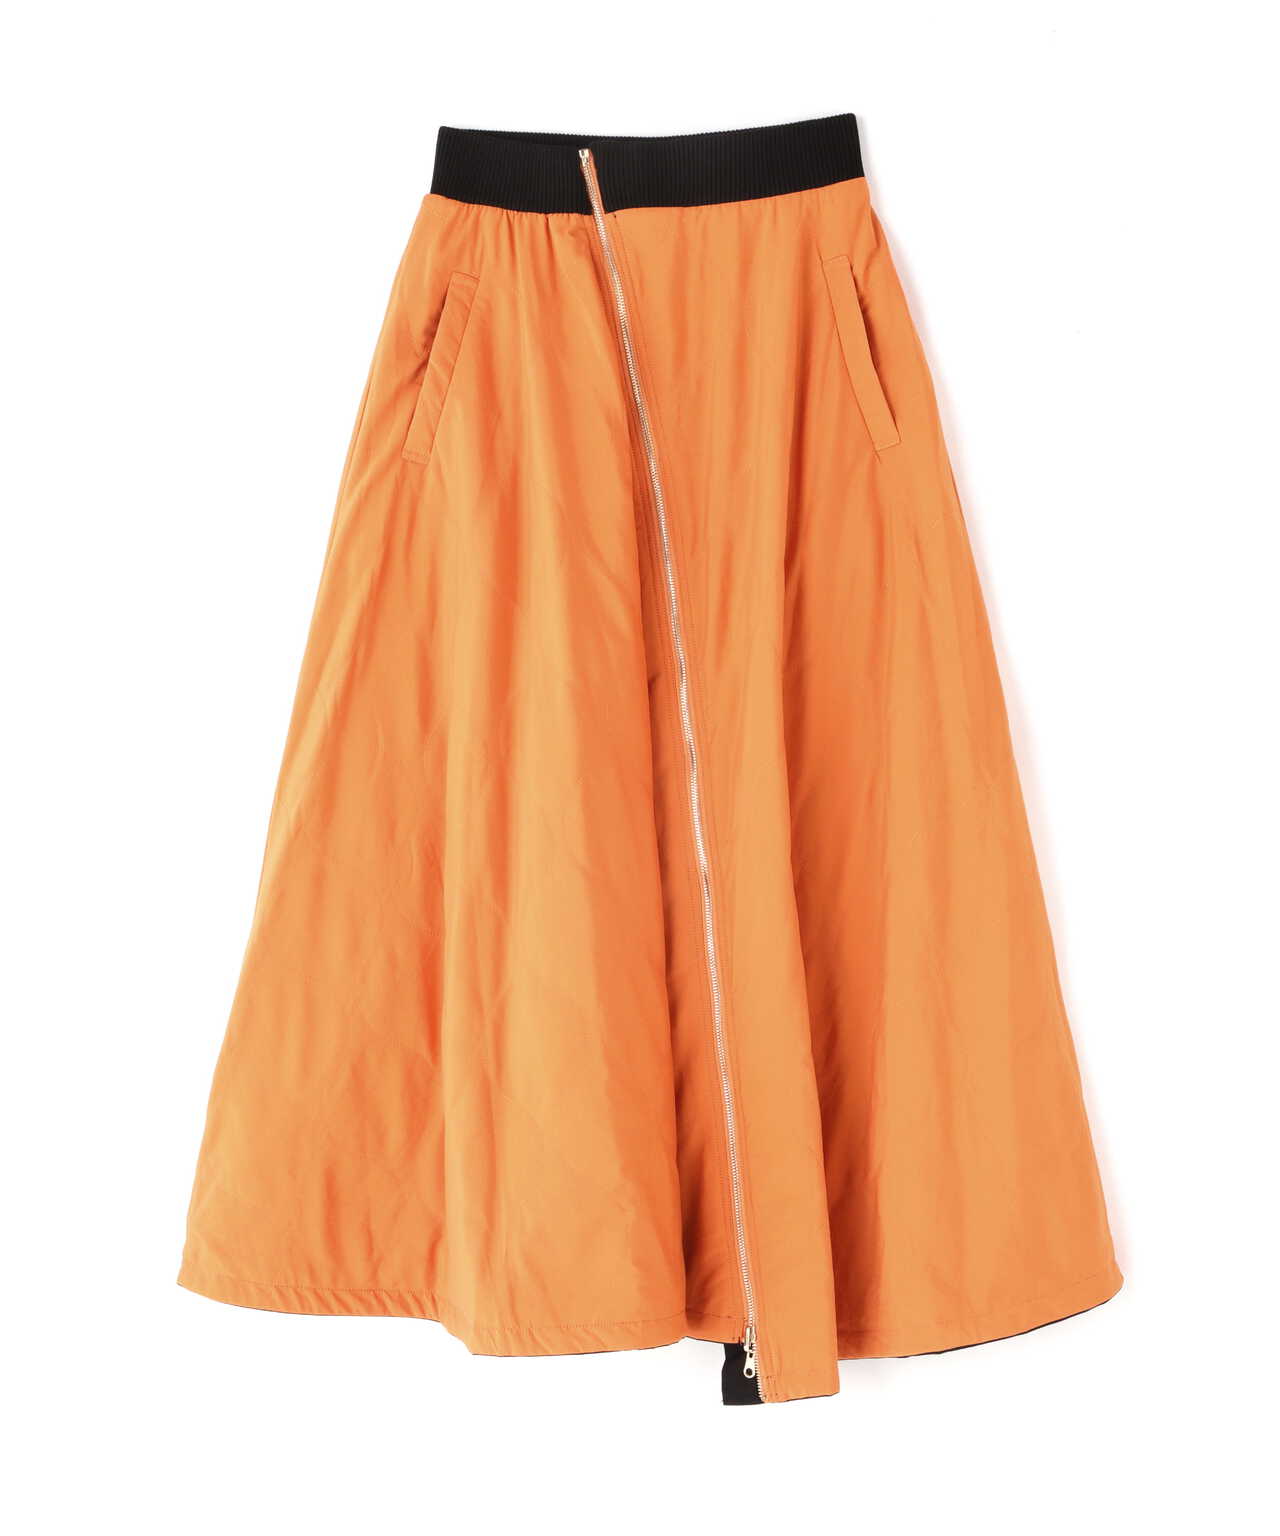 Risley/リズレー/オレンジキルトリバーシブルスカート